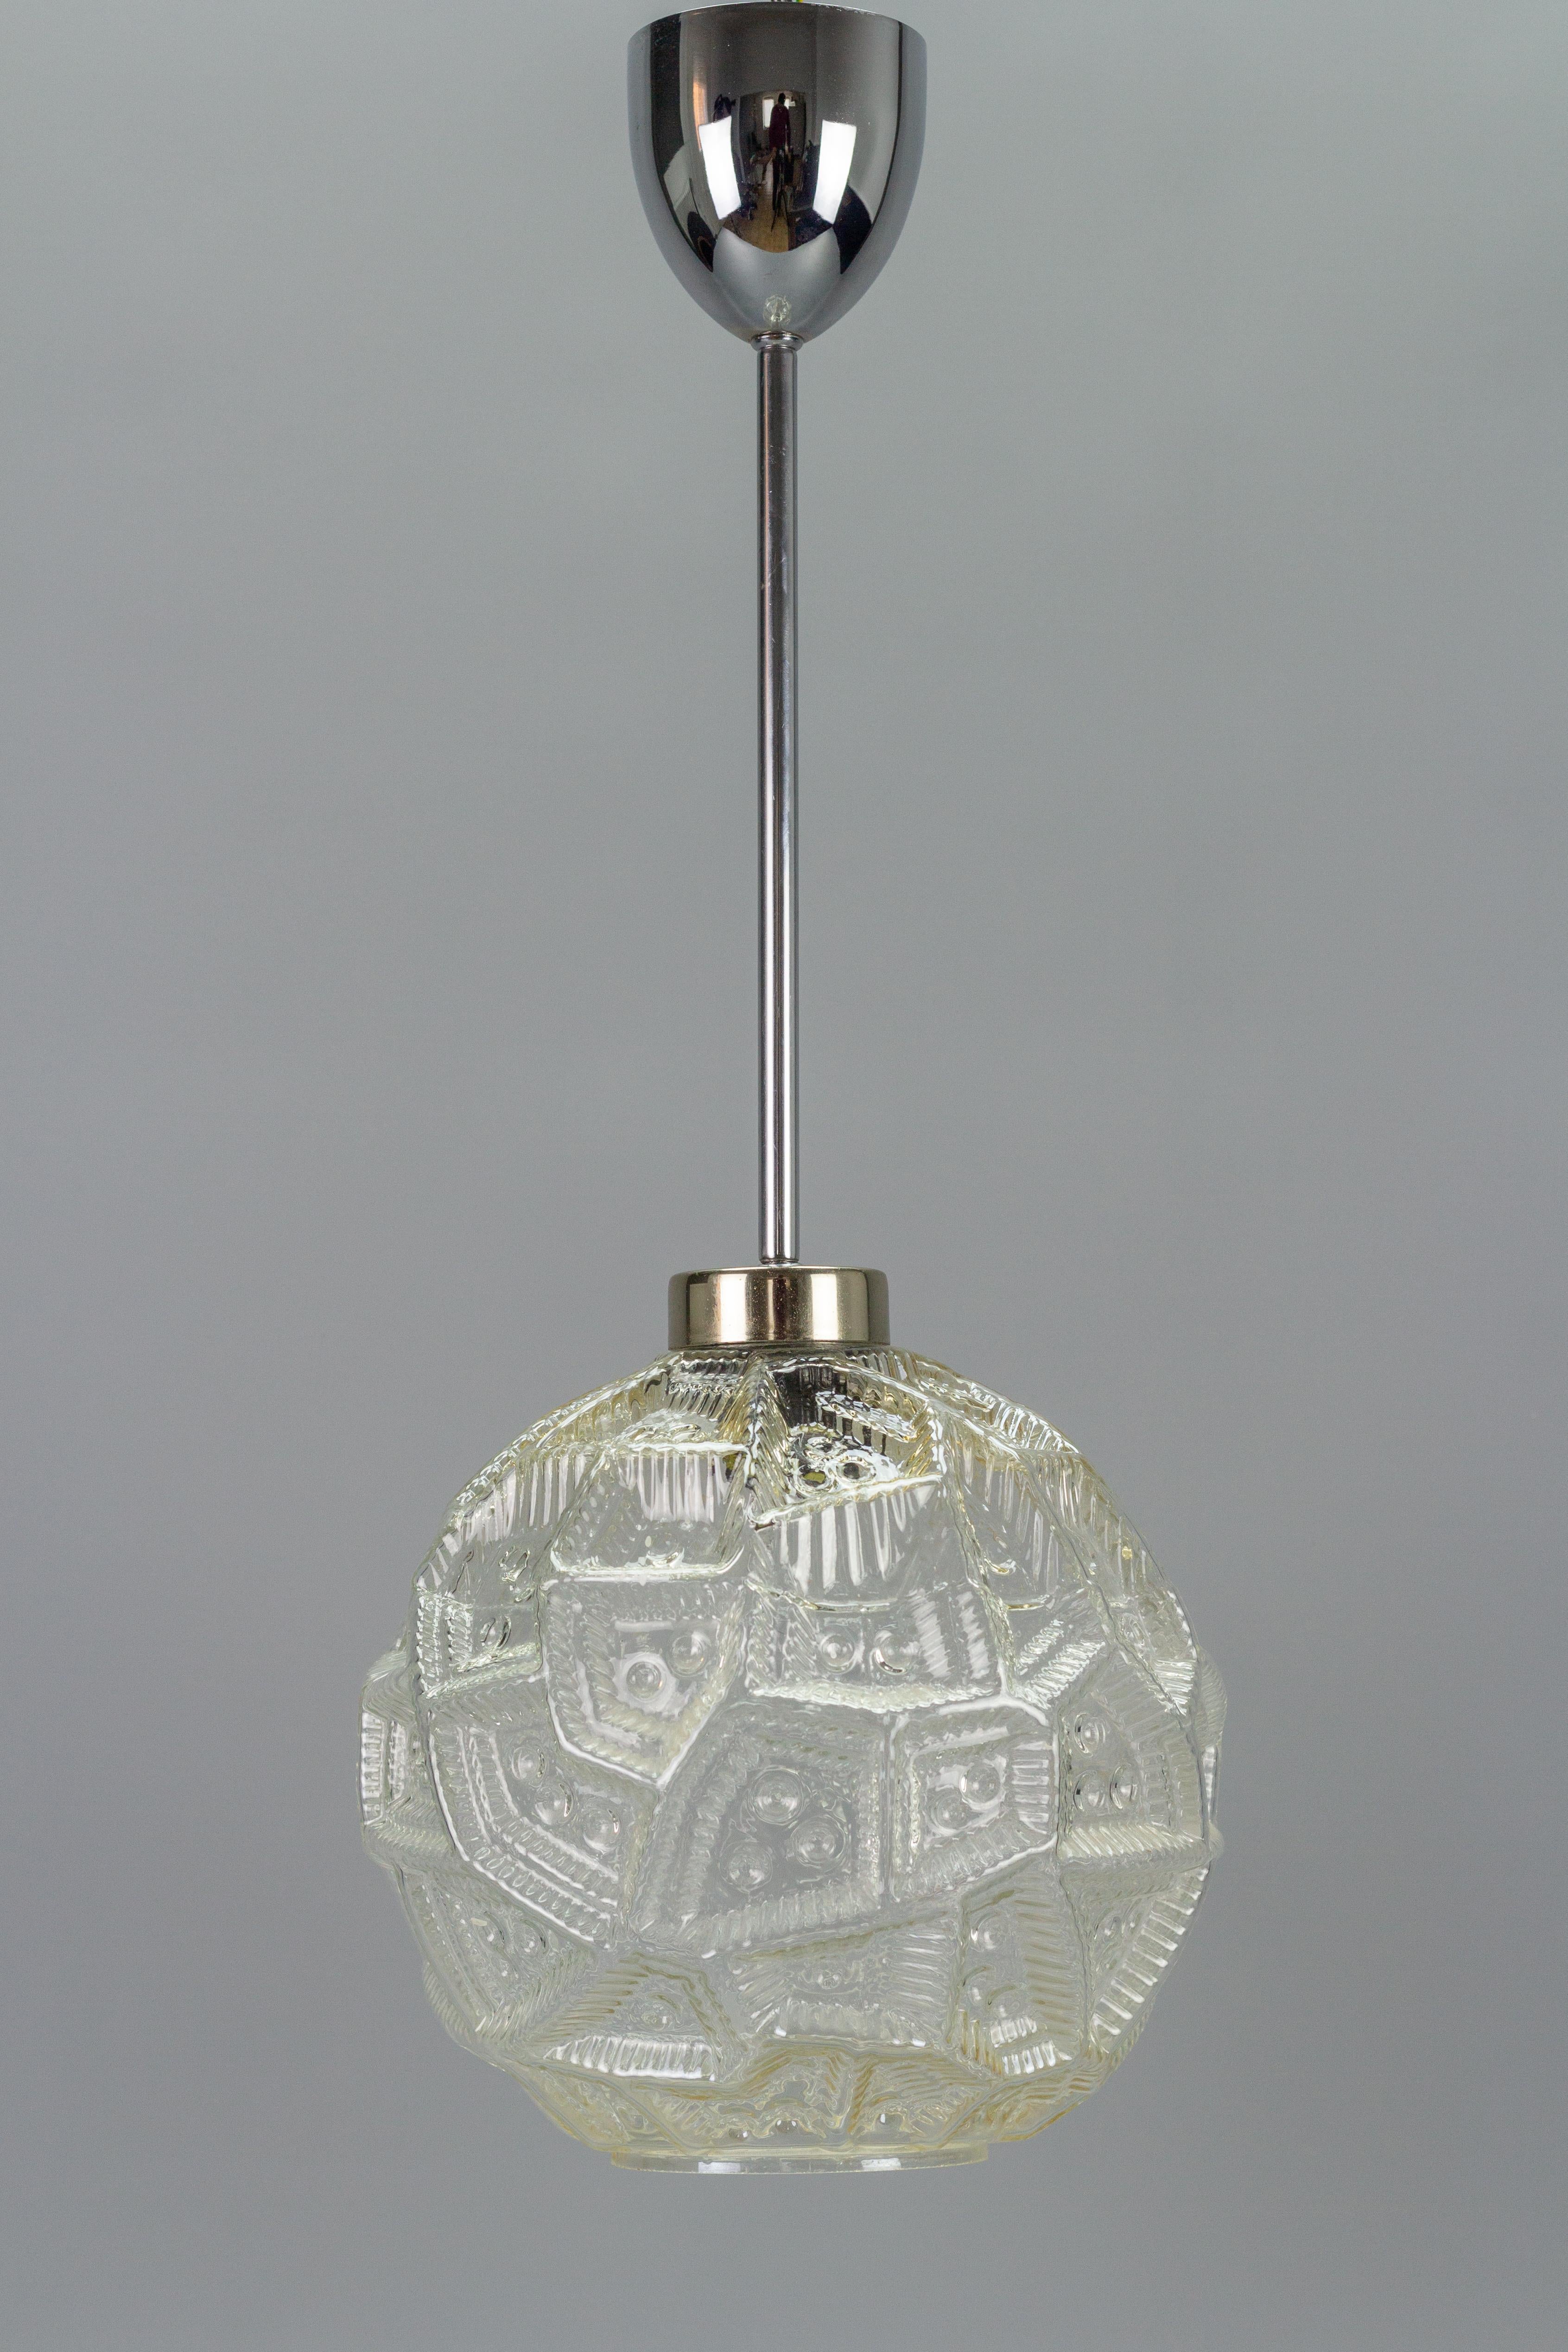 Mid-Century Modern Pendelleuchte mit klarem Glaskugel-Lampenschirm und verchromter Fassung. Deutschland, 1970er Jahre. Das Licht wird von der ungewöhnlichen Struktur der Glaskugeloberfläche reflektiert und gebrochen, wodurch Licht- und